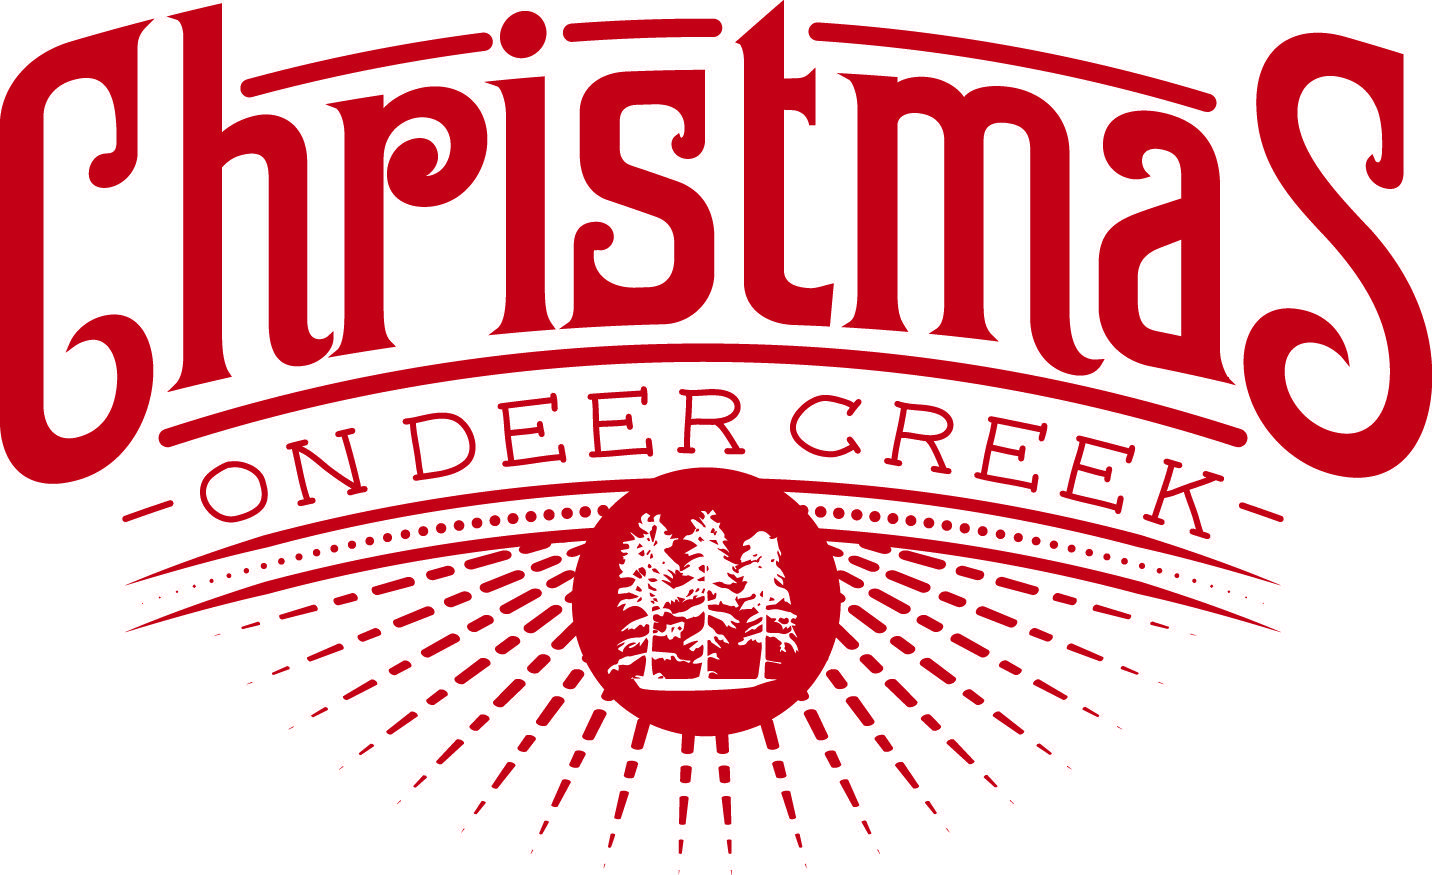 Chistmas Logo - Christmas on Deer Creek